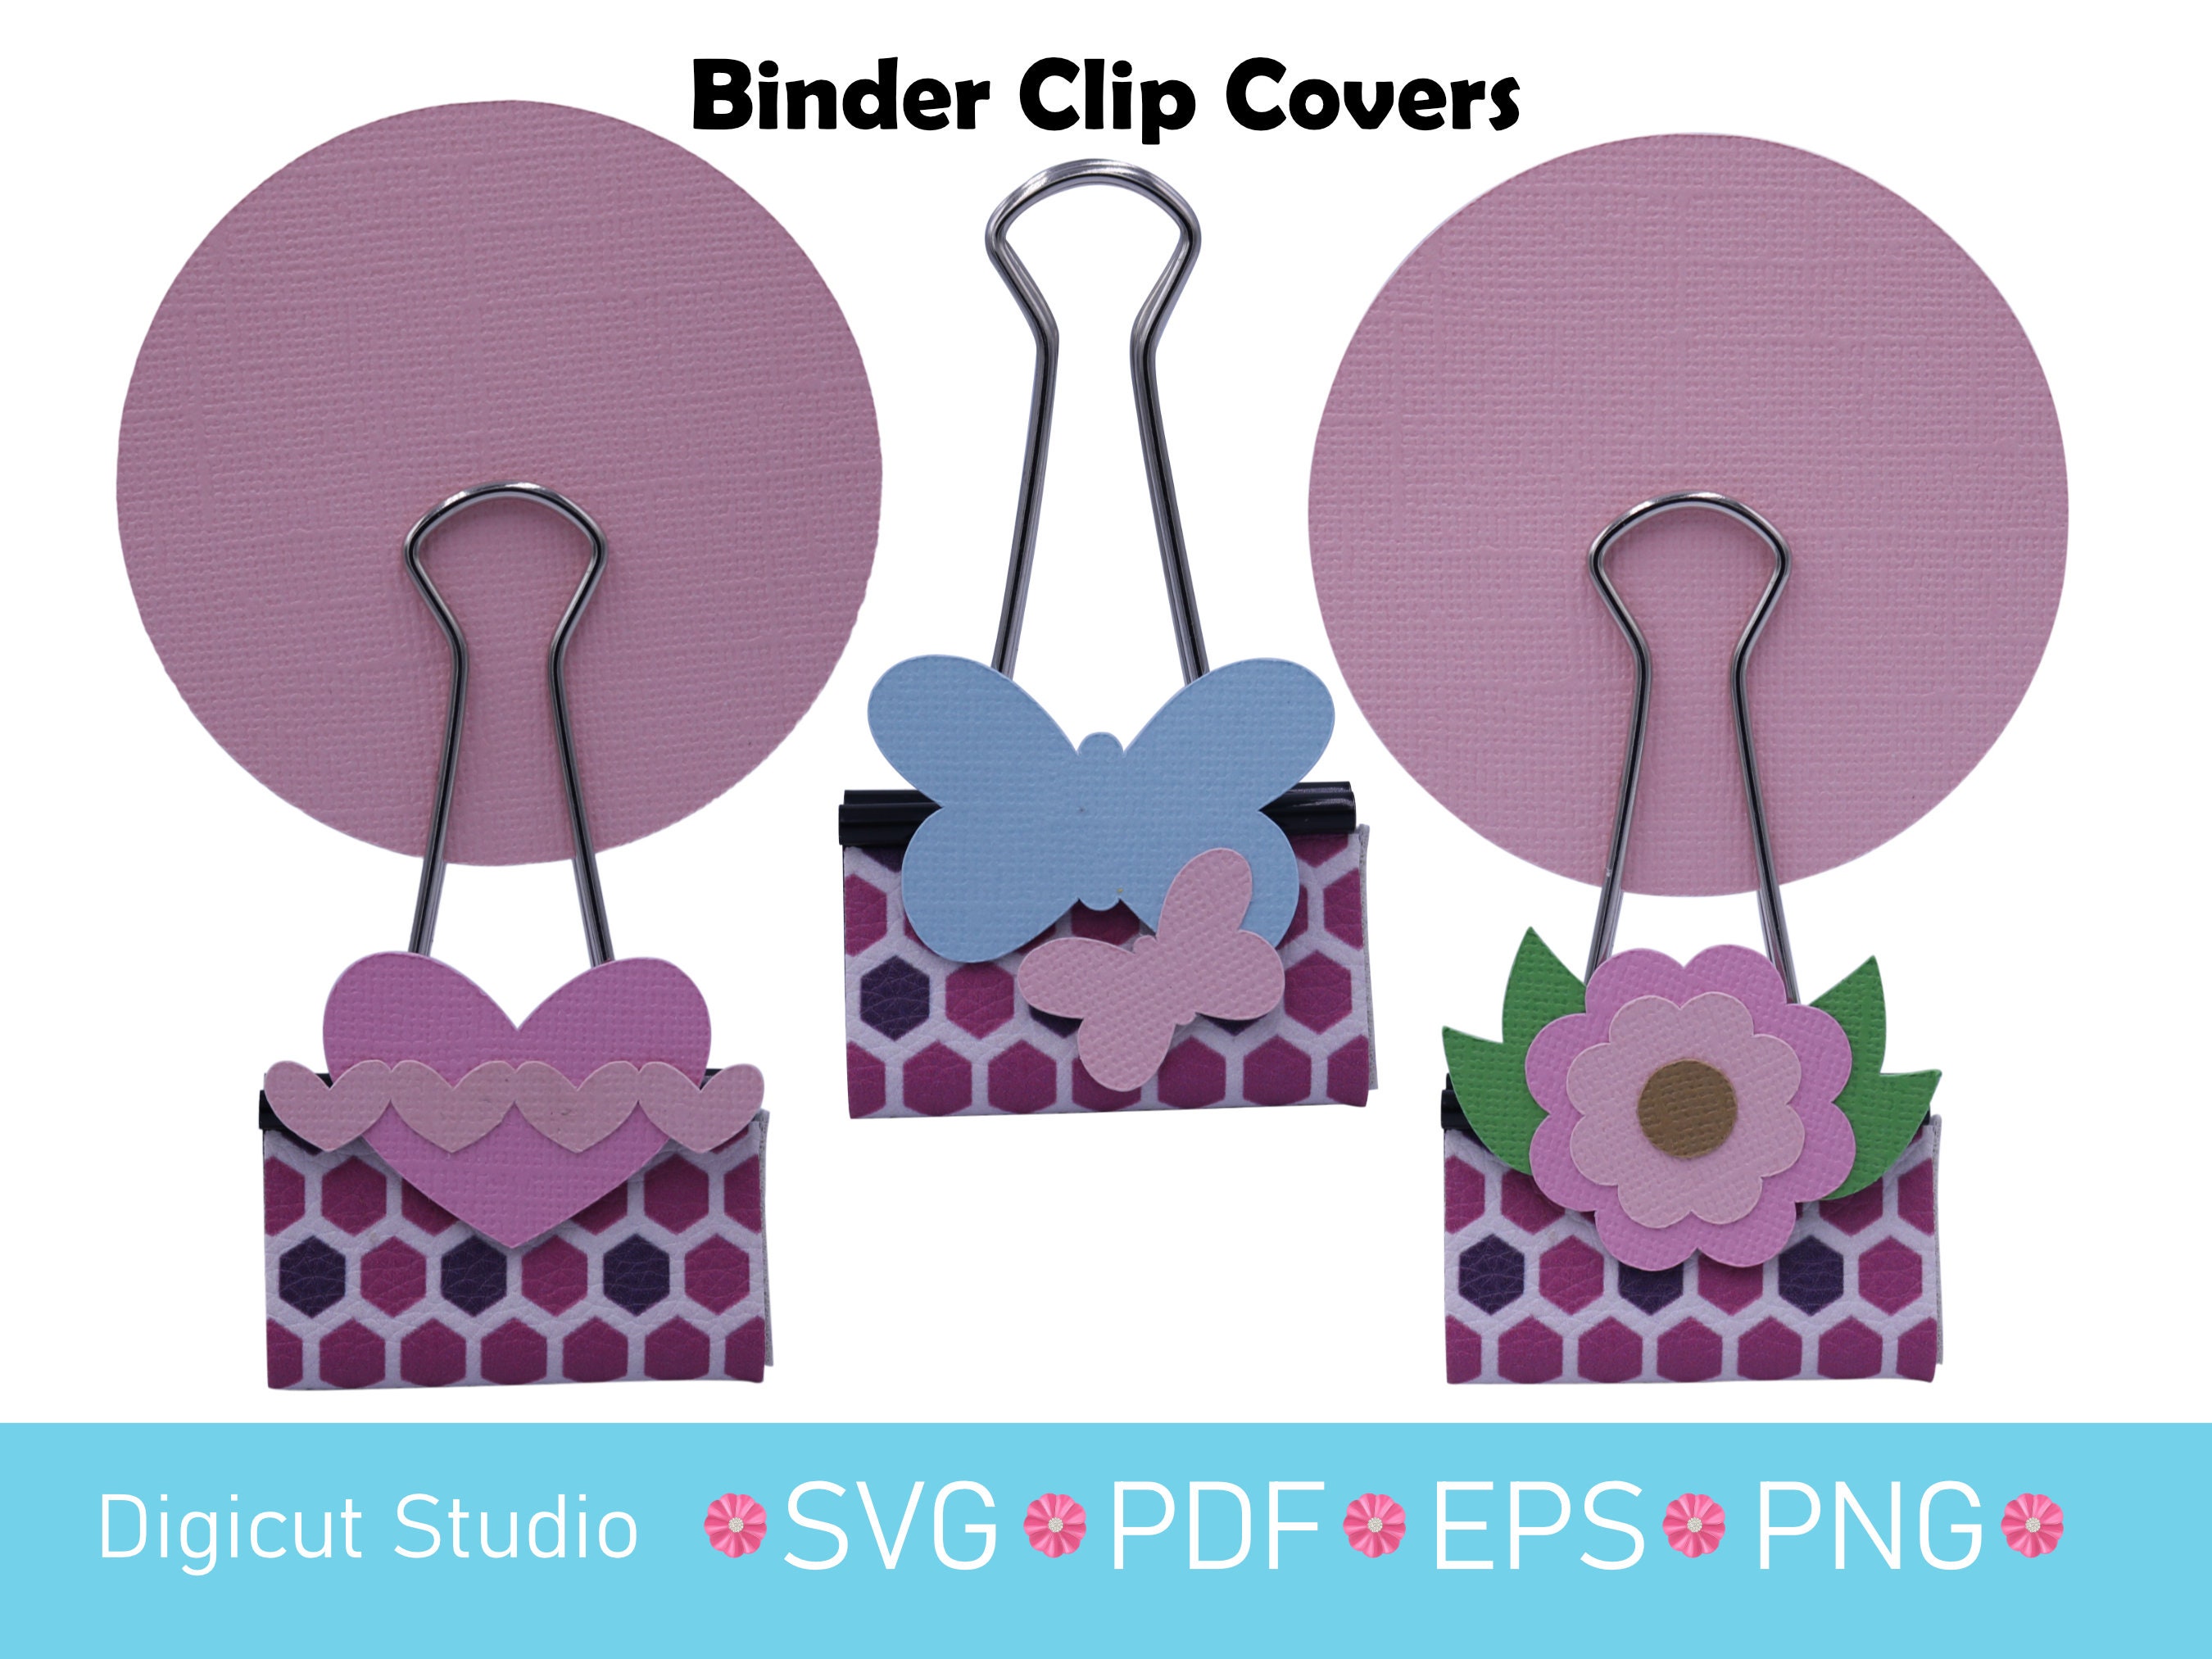 Embellished Binder Clips Junk Journal Accessory Binder Clip